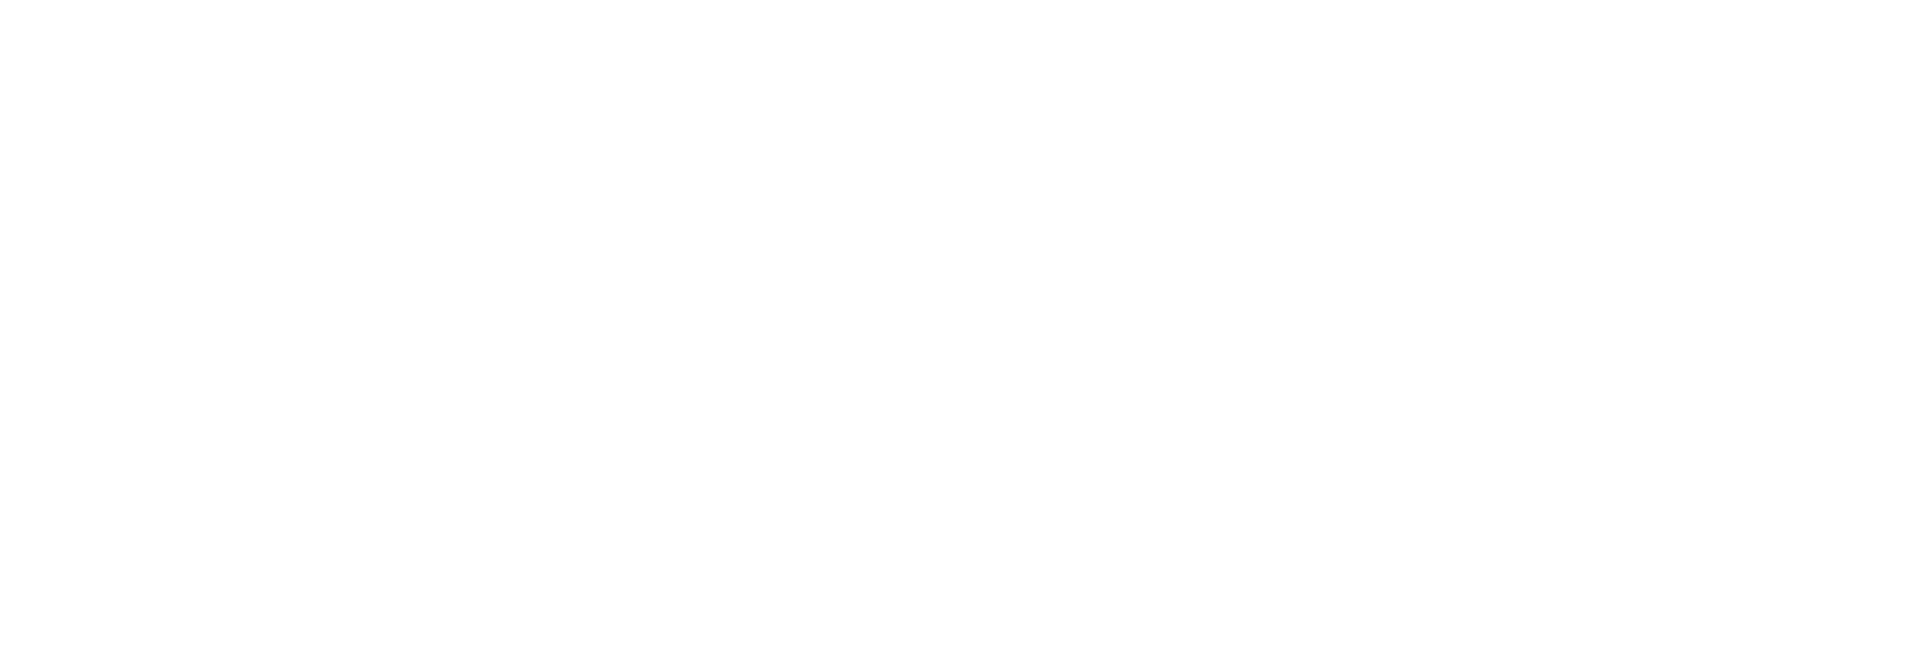 Logo CMMTQ